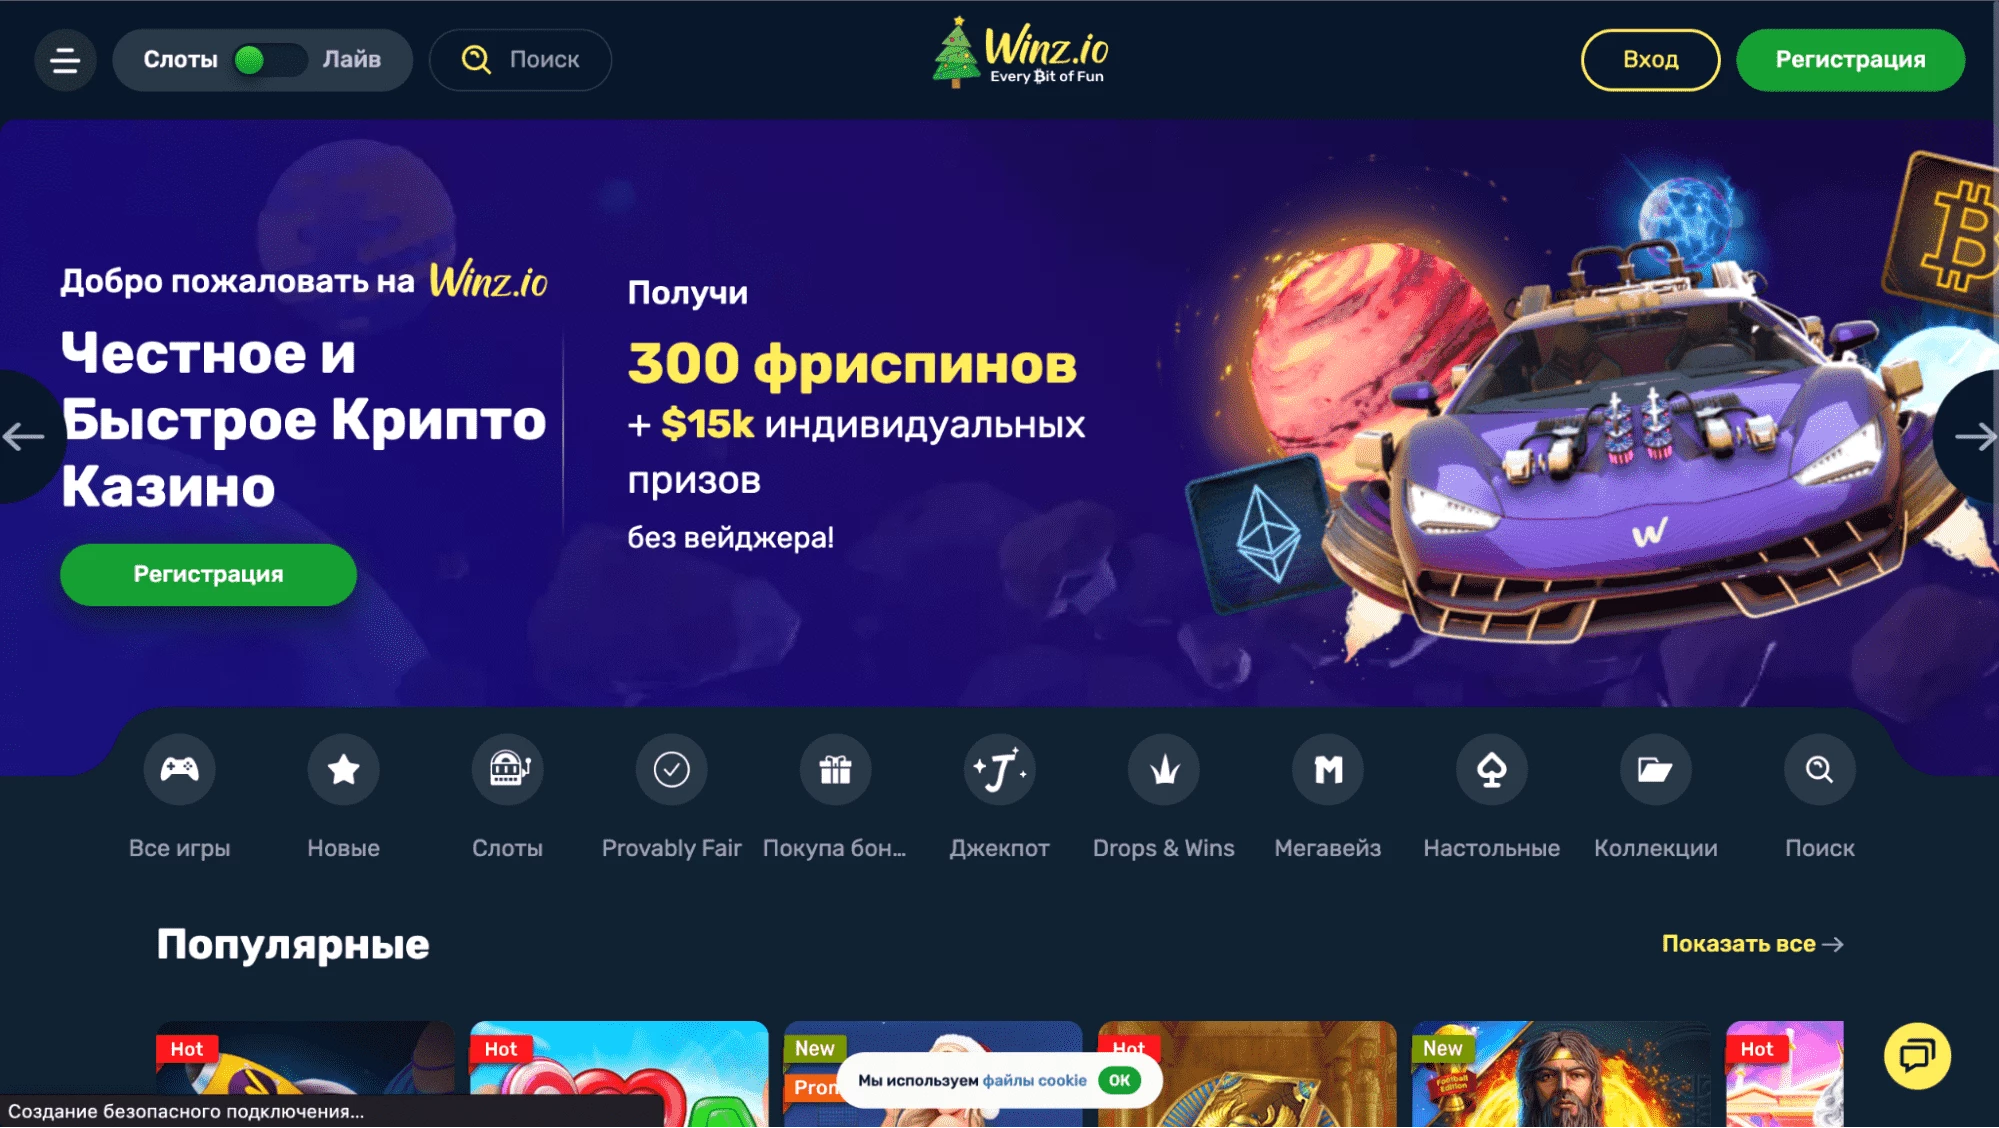 Главная страница сайта крипто-казино Winz.io